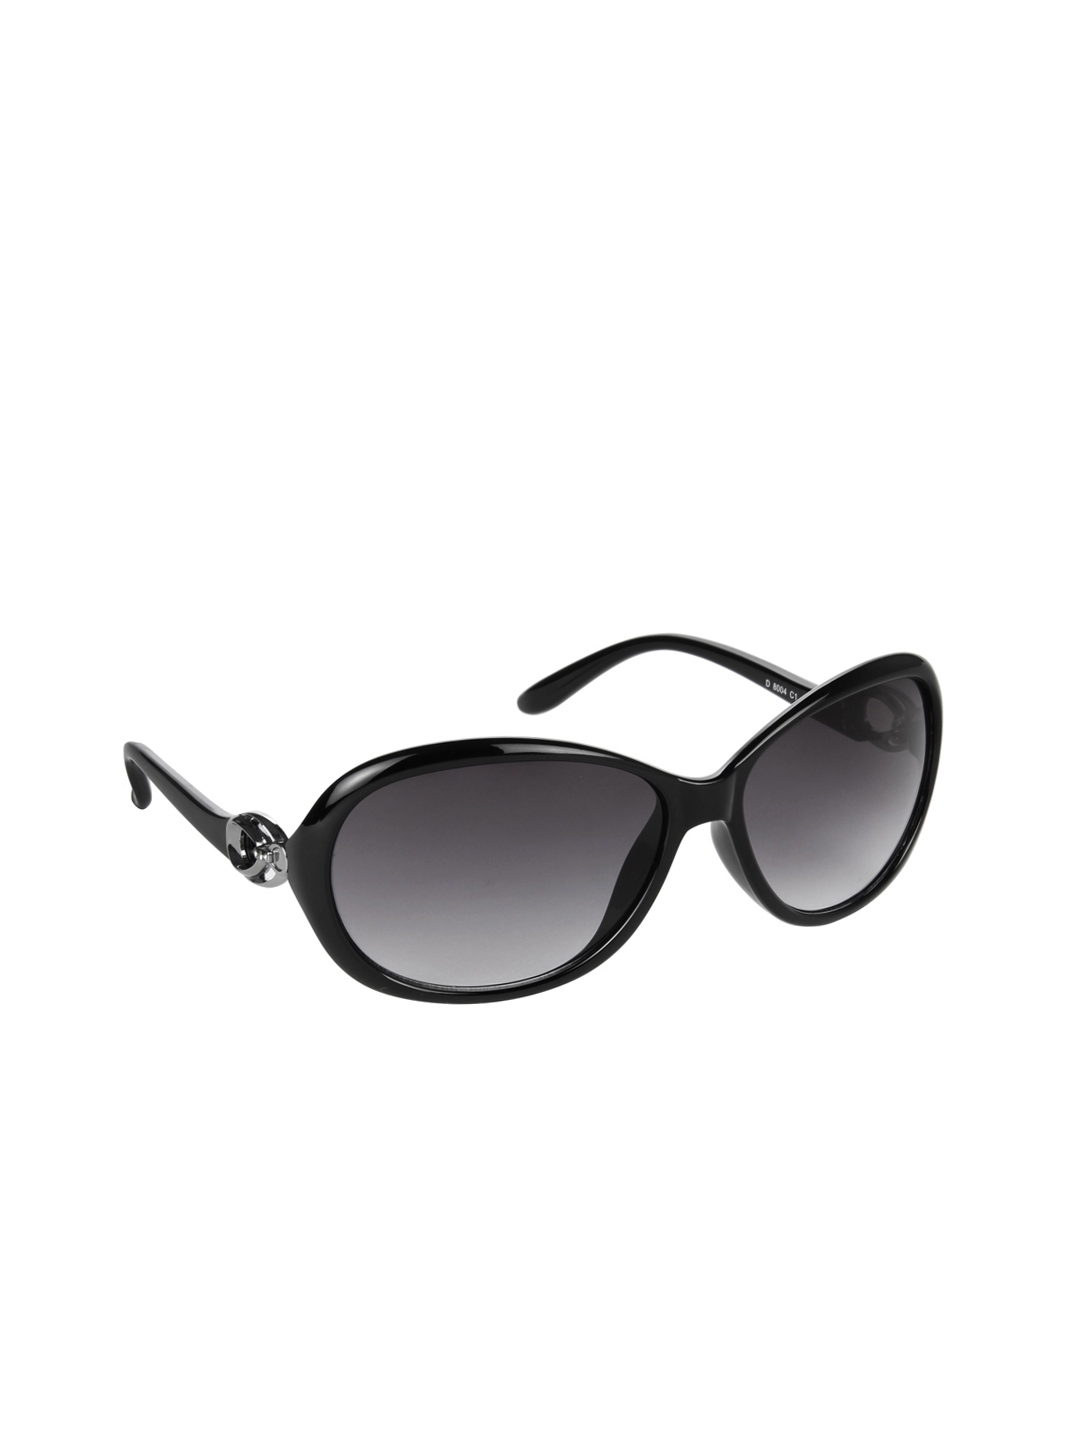 Buy Dollar Women Sunglasses D 8004 C1 Sunglasses for Women 321500